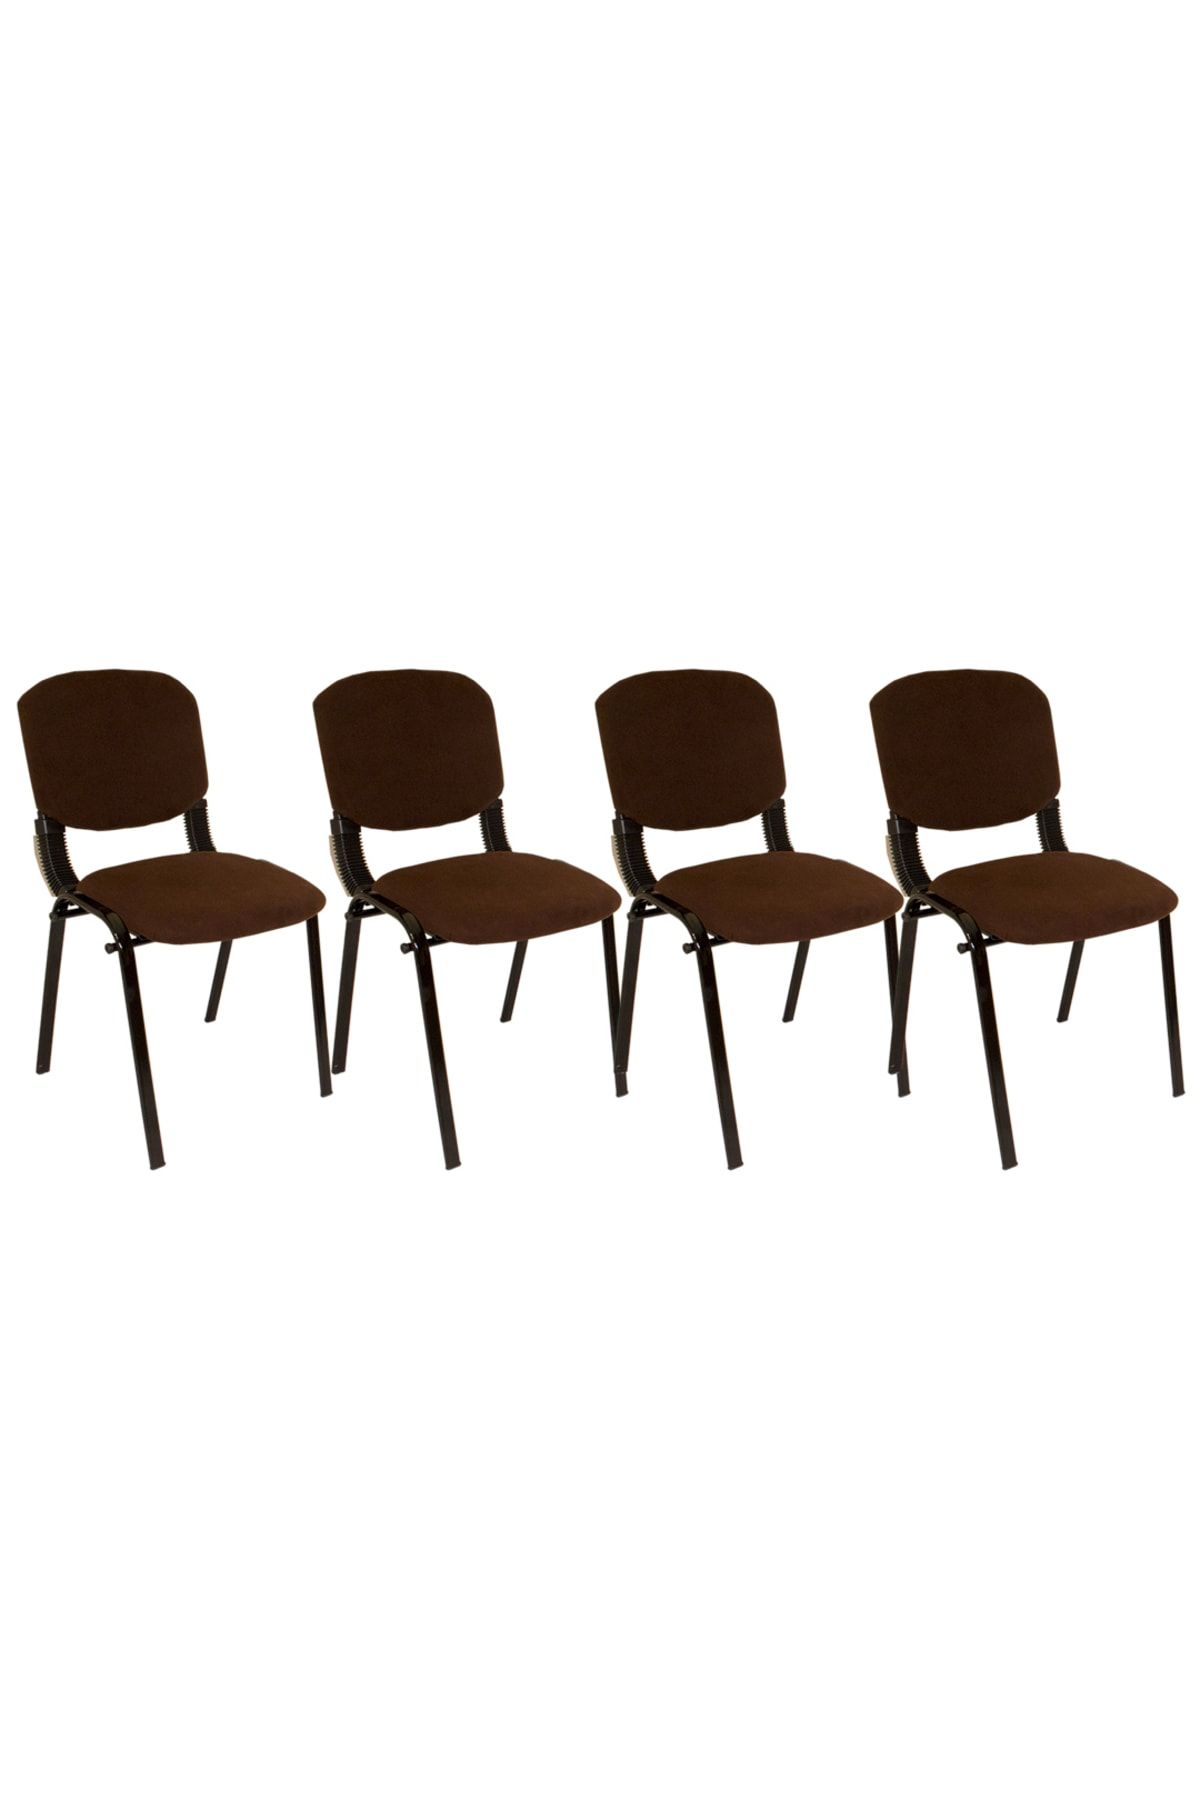 Dockers Form Ofis Ve Toplantı Sandalyesi (kumaş) (4 Adet) - Kahve